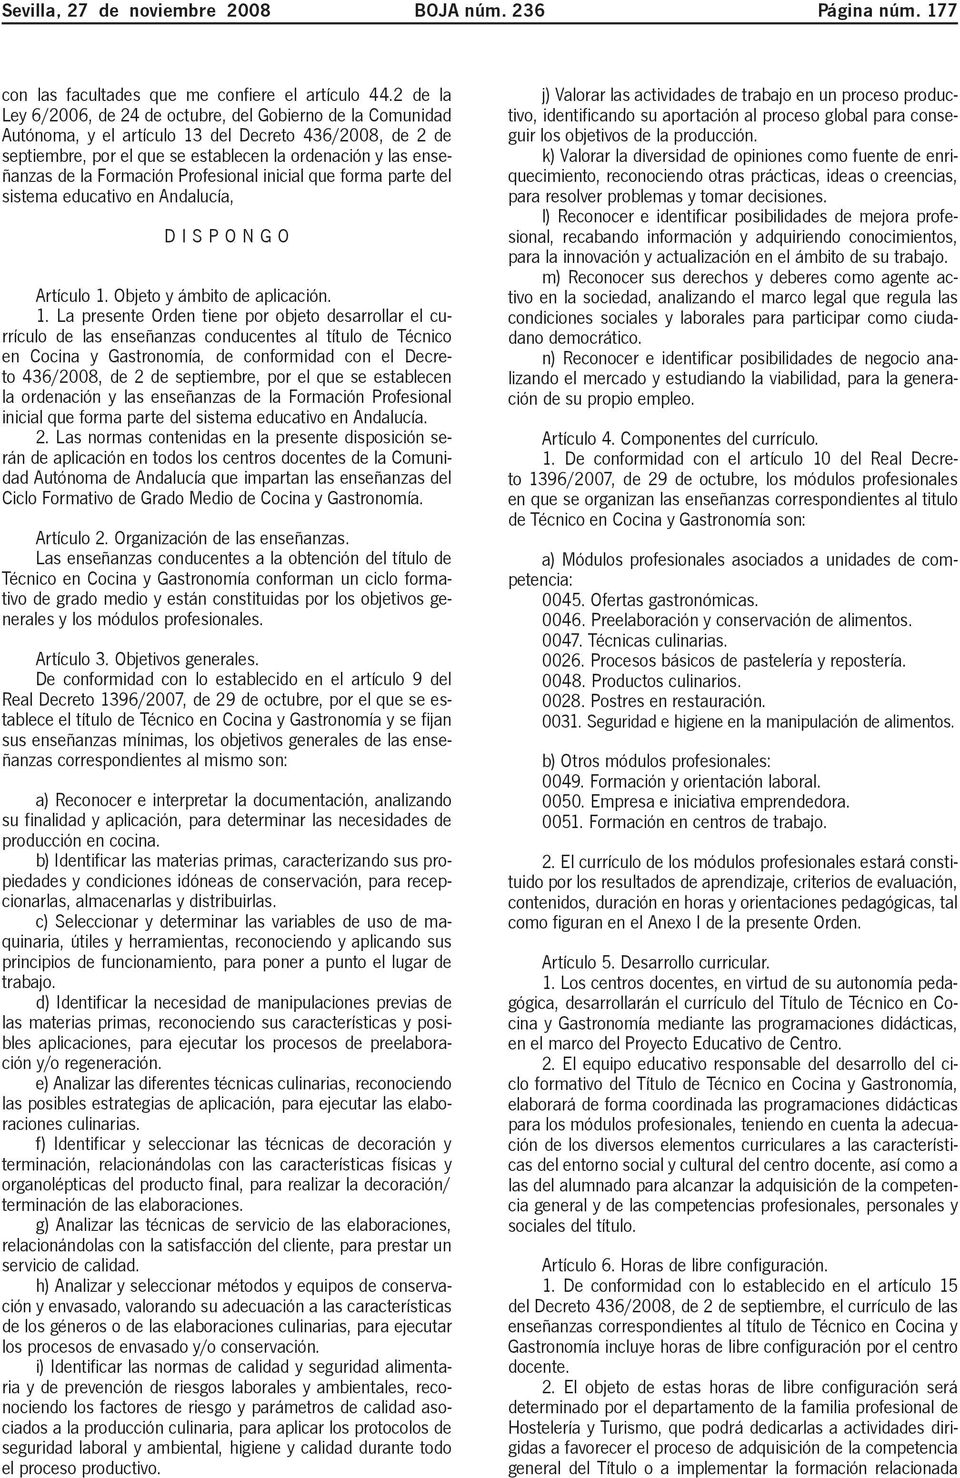 Formación Profesional inicial que forma parte del sistema educativo en Andalucía, DISPONGO Artículo 1.